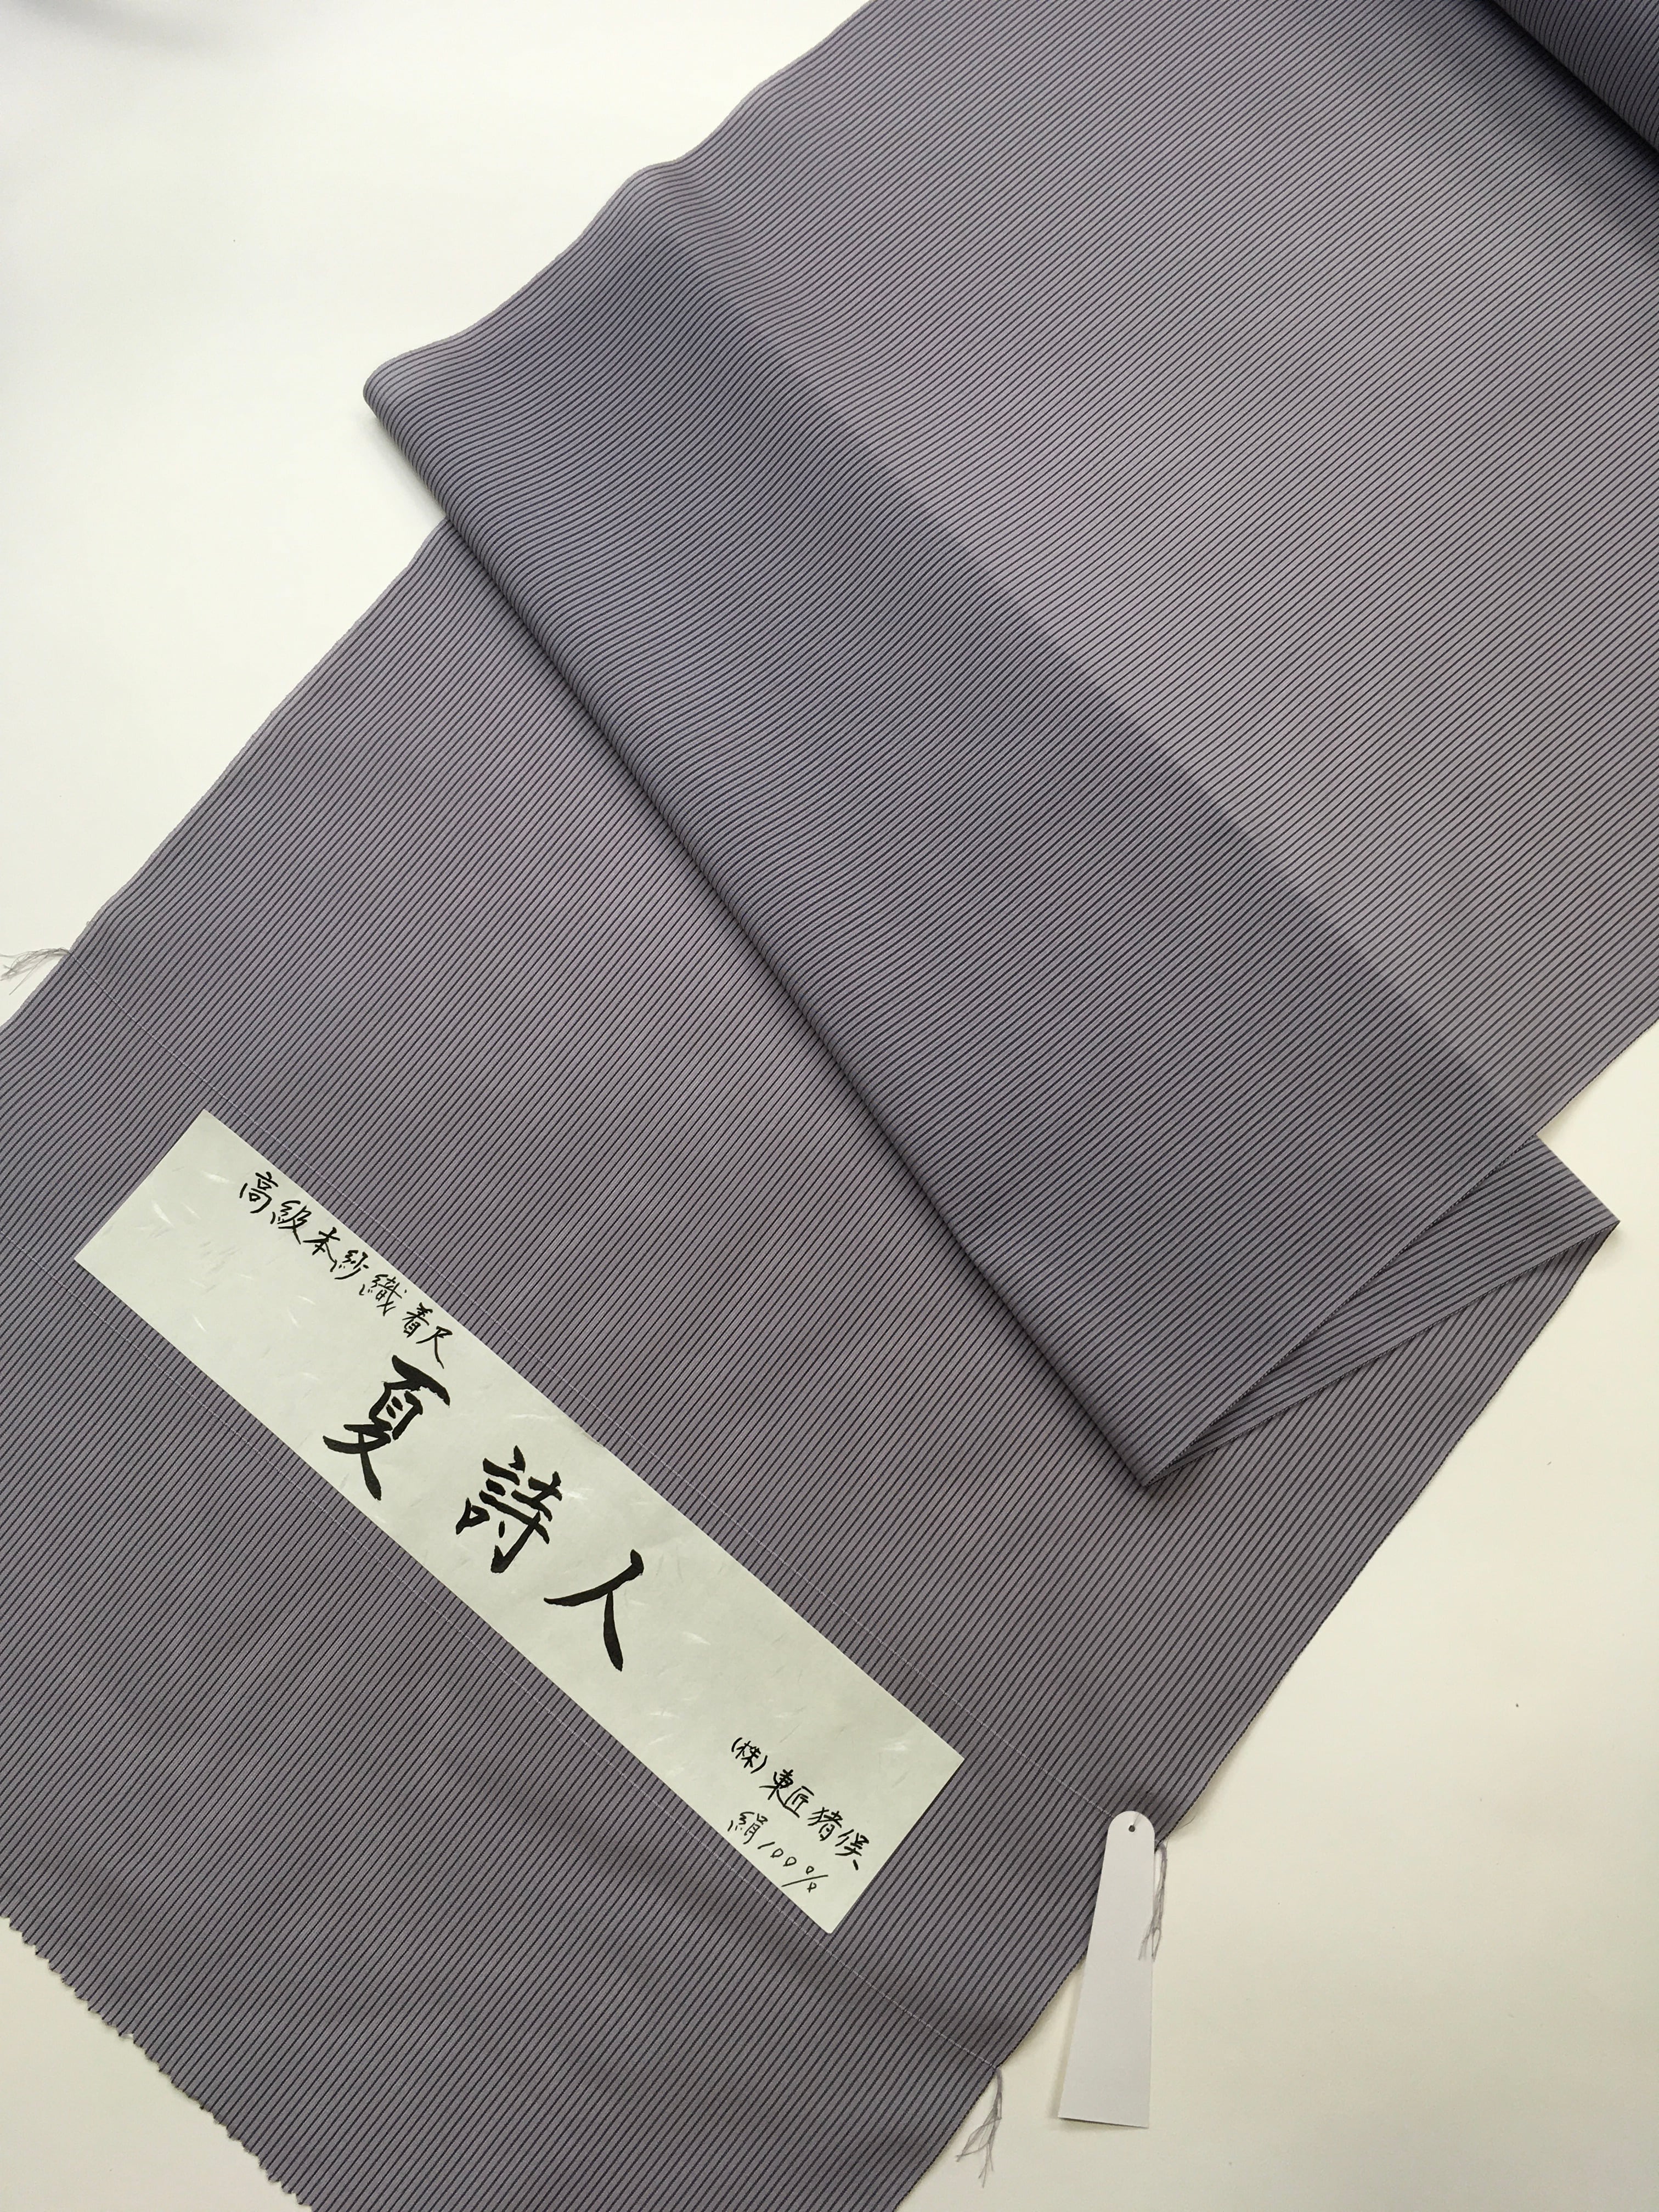 【男性夏着物】東匠猪俣謹製 高級特駒糸使用 夏紗着尺 広幅 羽織に